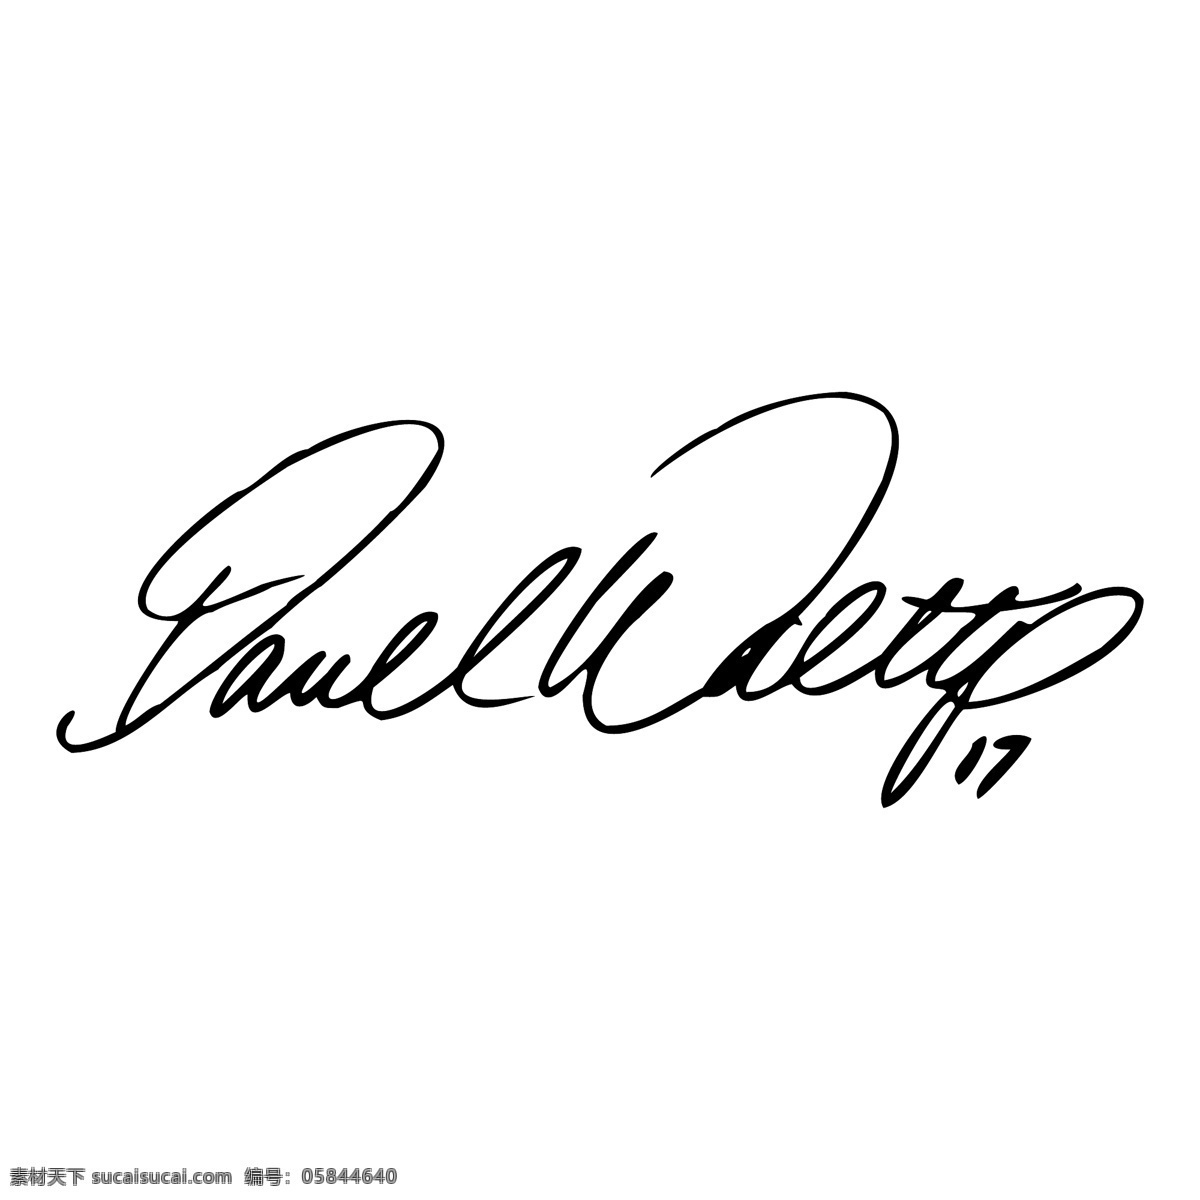 达雷尔 waltrip 签名 标识 公司 免费 品牌 品牌标识 商标 矢量标志下载 免费矢量标识 矢量 psd源文件 logo设计